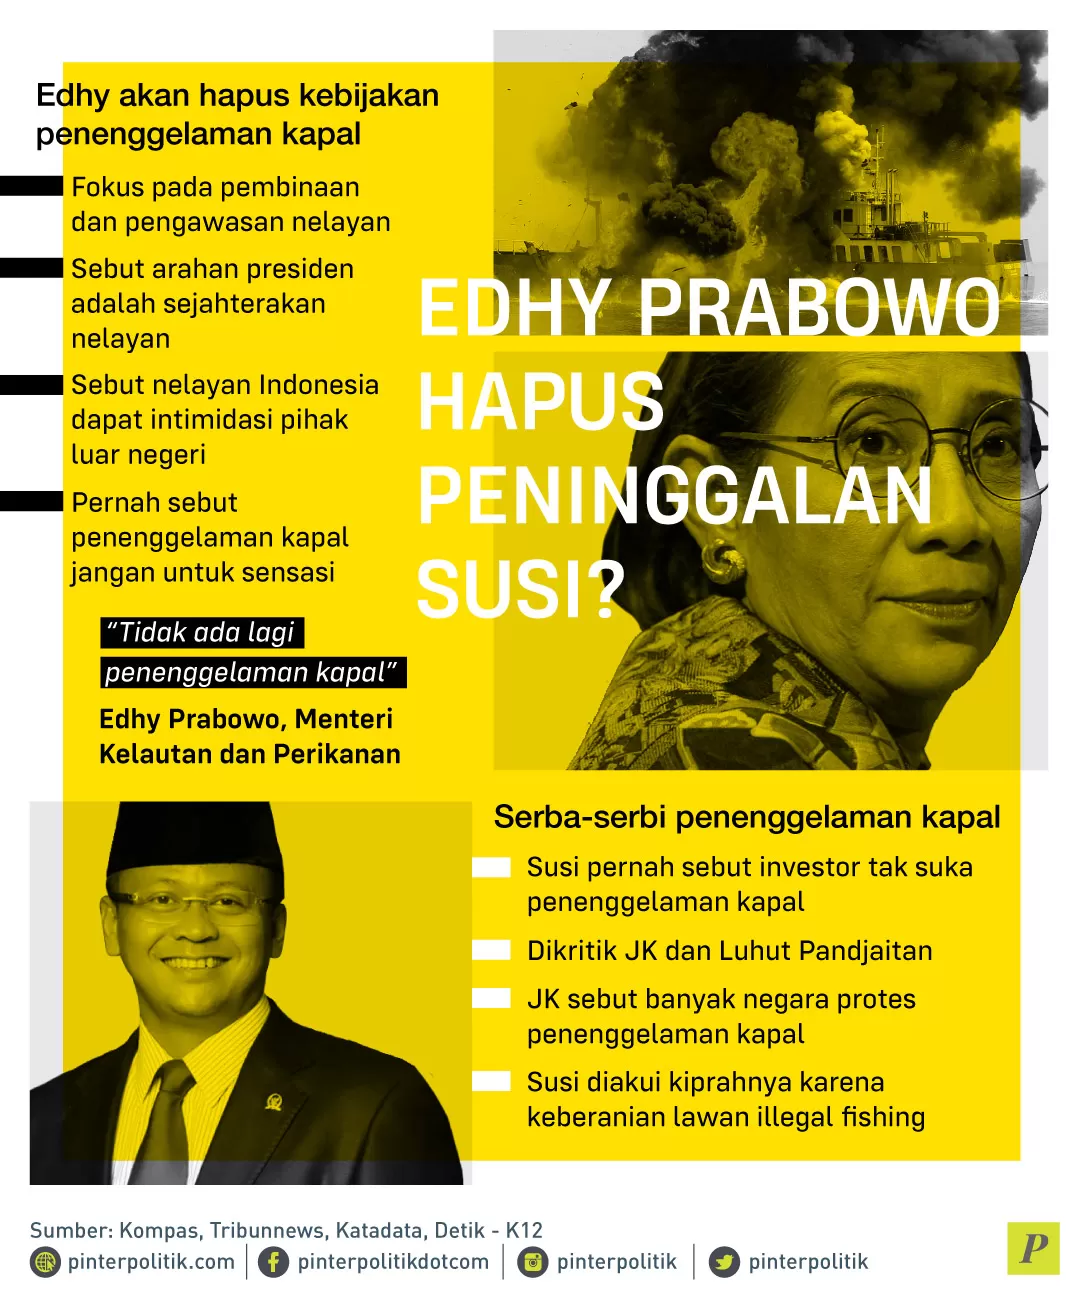 Edhy Prabowo akan hapus kebijakan penenggelaman kapal